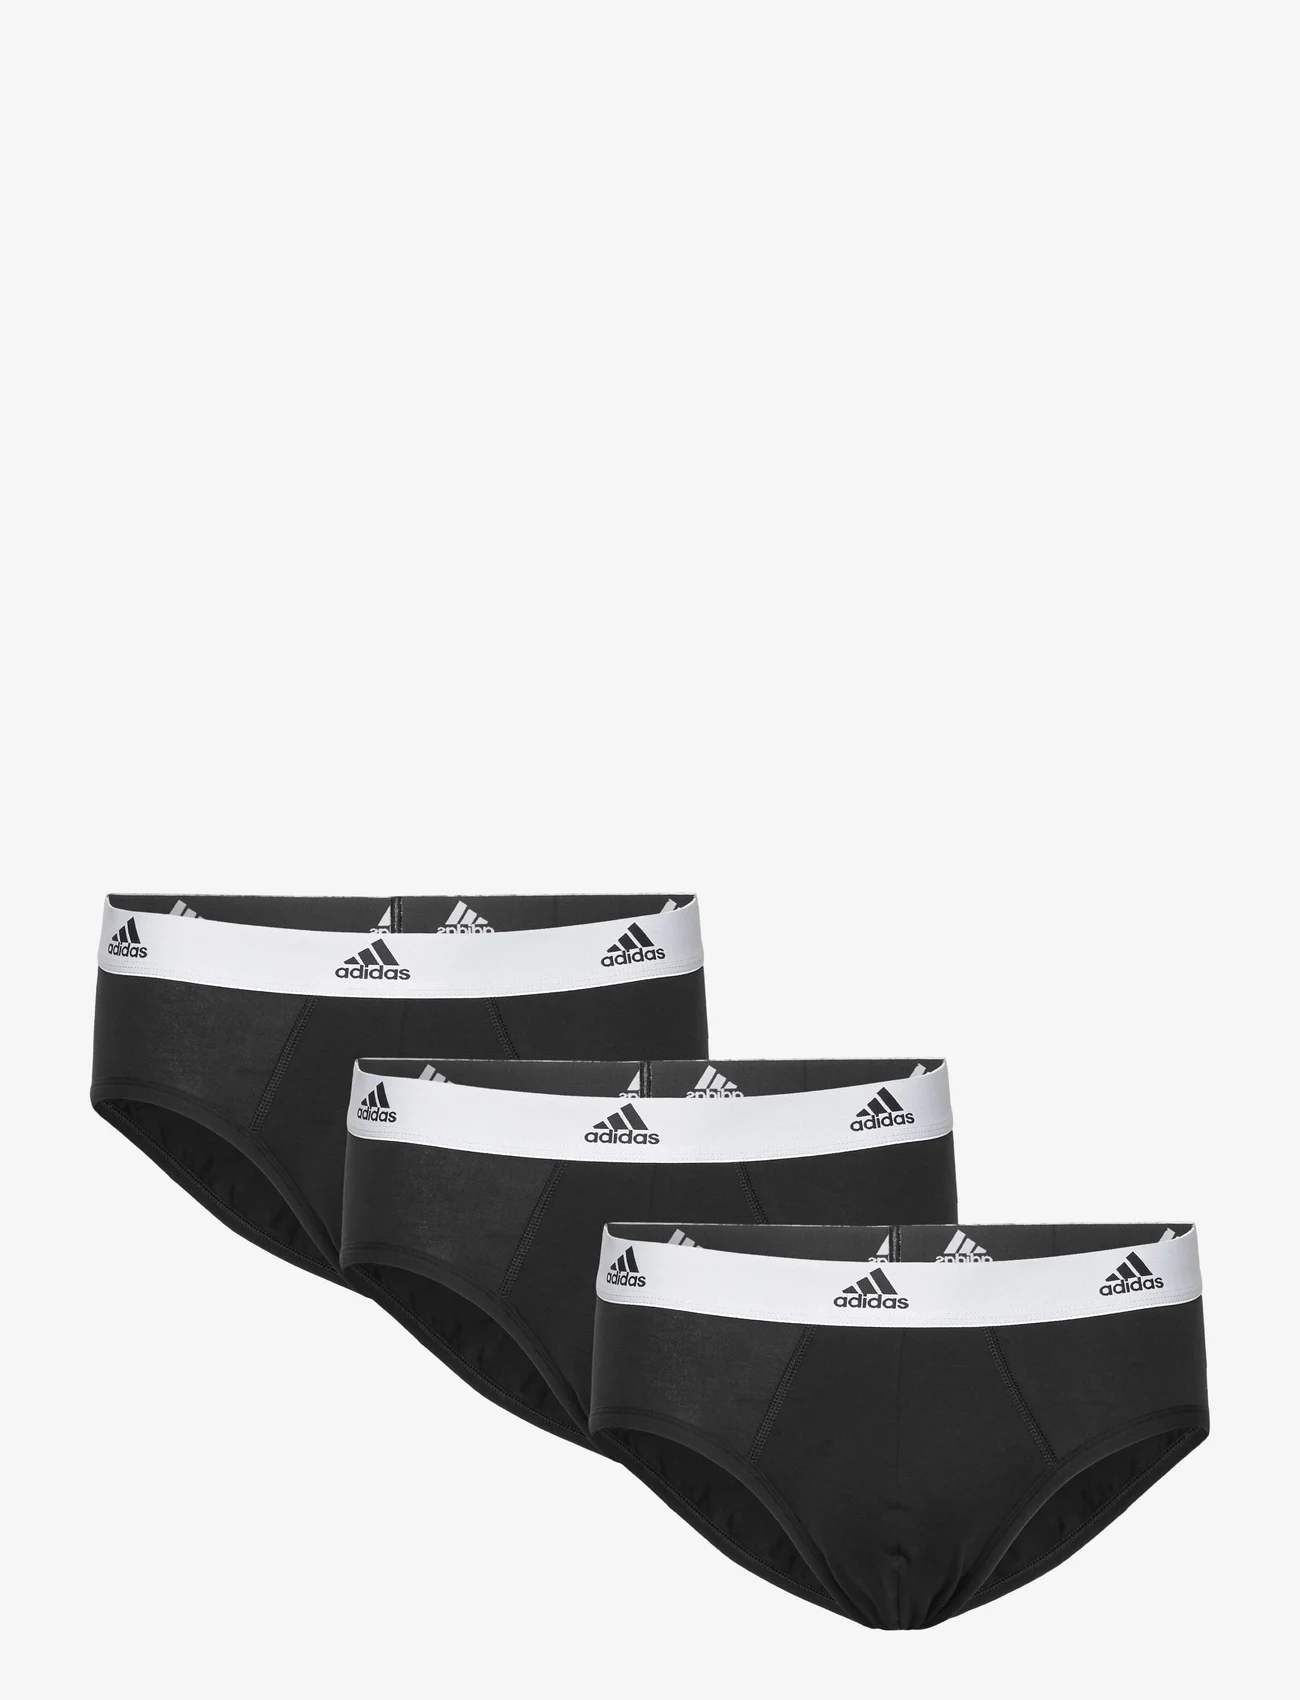 adidas Underwear - Brief - laveste priser - black-mel. - 0